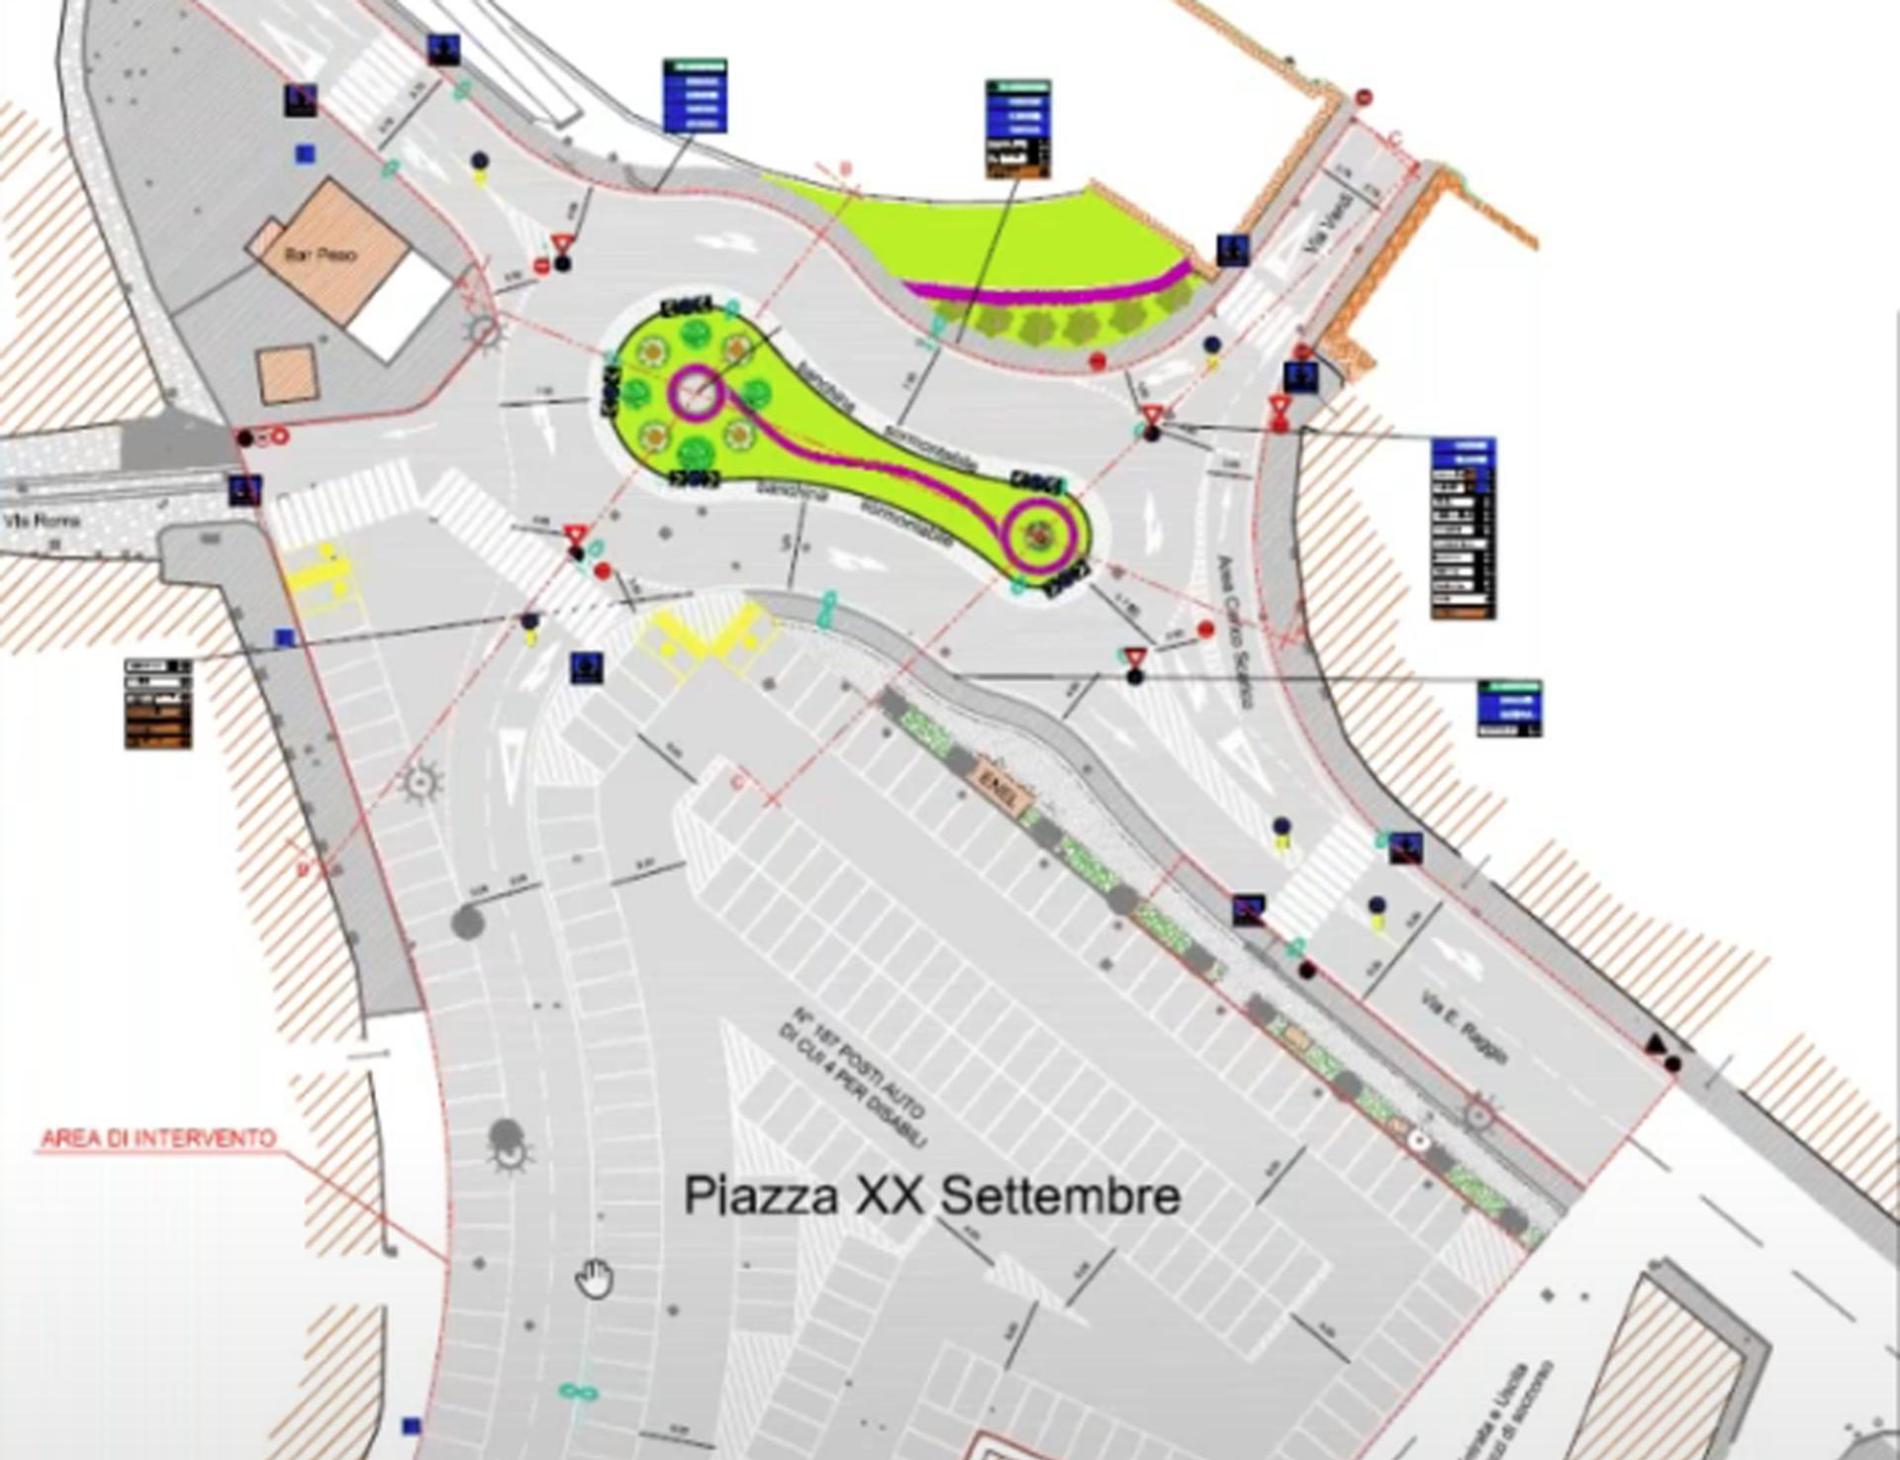 Piano mobilità: tangenzialina, piazza XX e Z3 le opere decisive